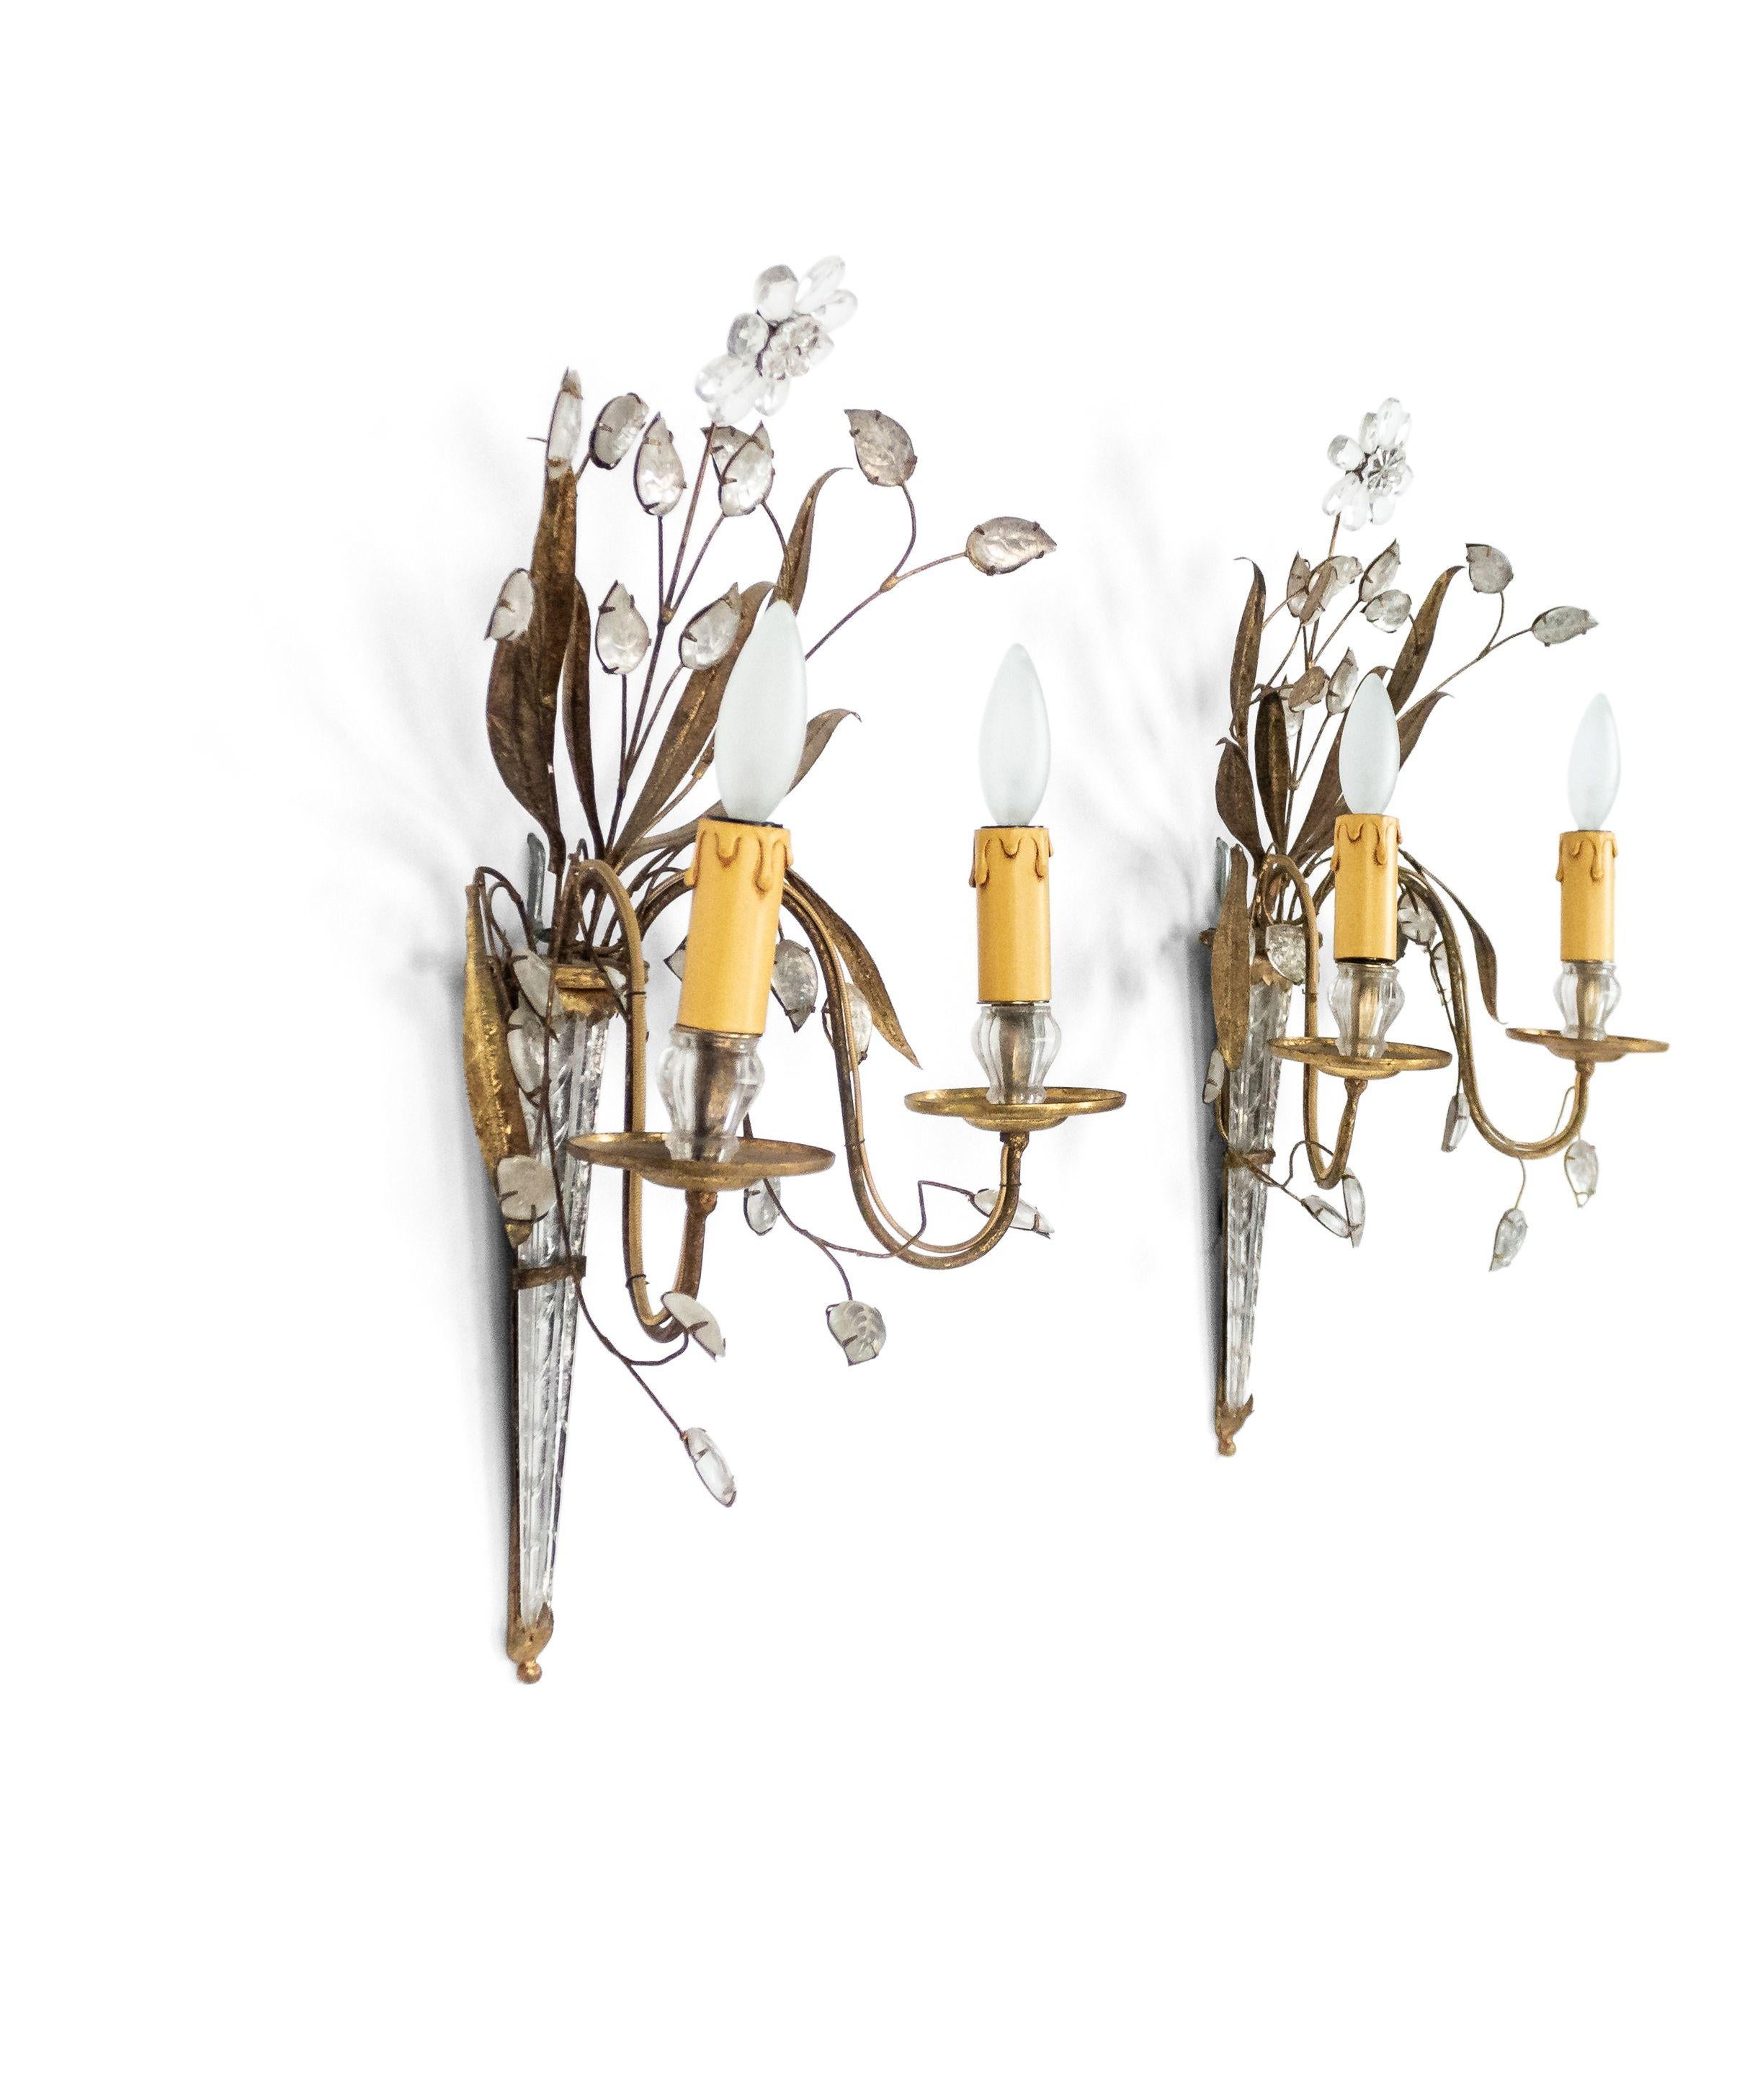 4 appliques murales françaises du milieu du siècle dernier (années 1940), en verre et métal doré, à deux bras, avec des branches fleuries émanant d'une plaque arrière de forme conique. (att : BAGUES) (PRIX UNIQUE)
